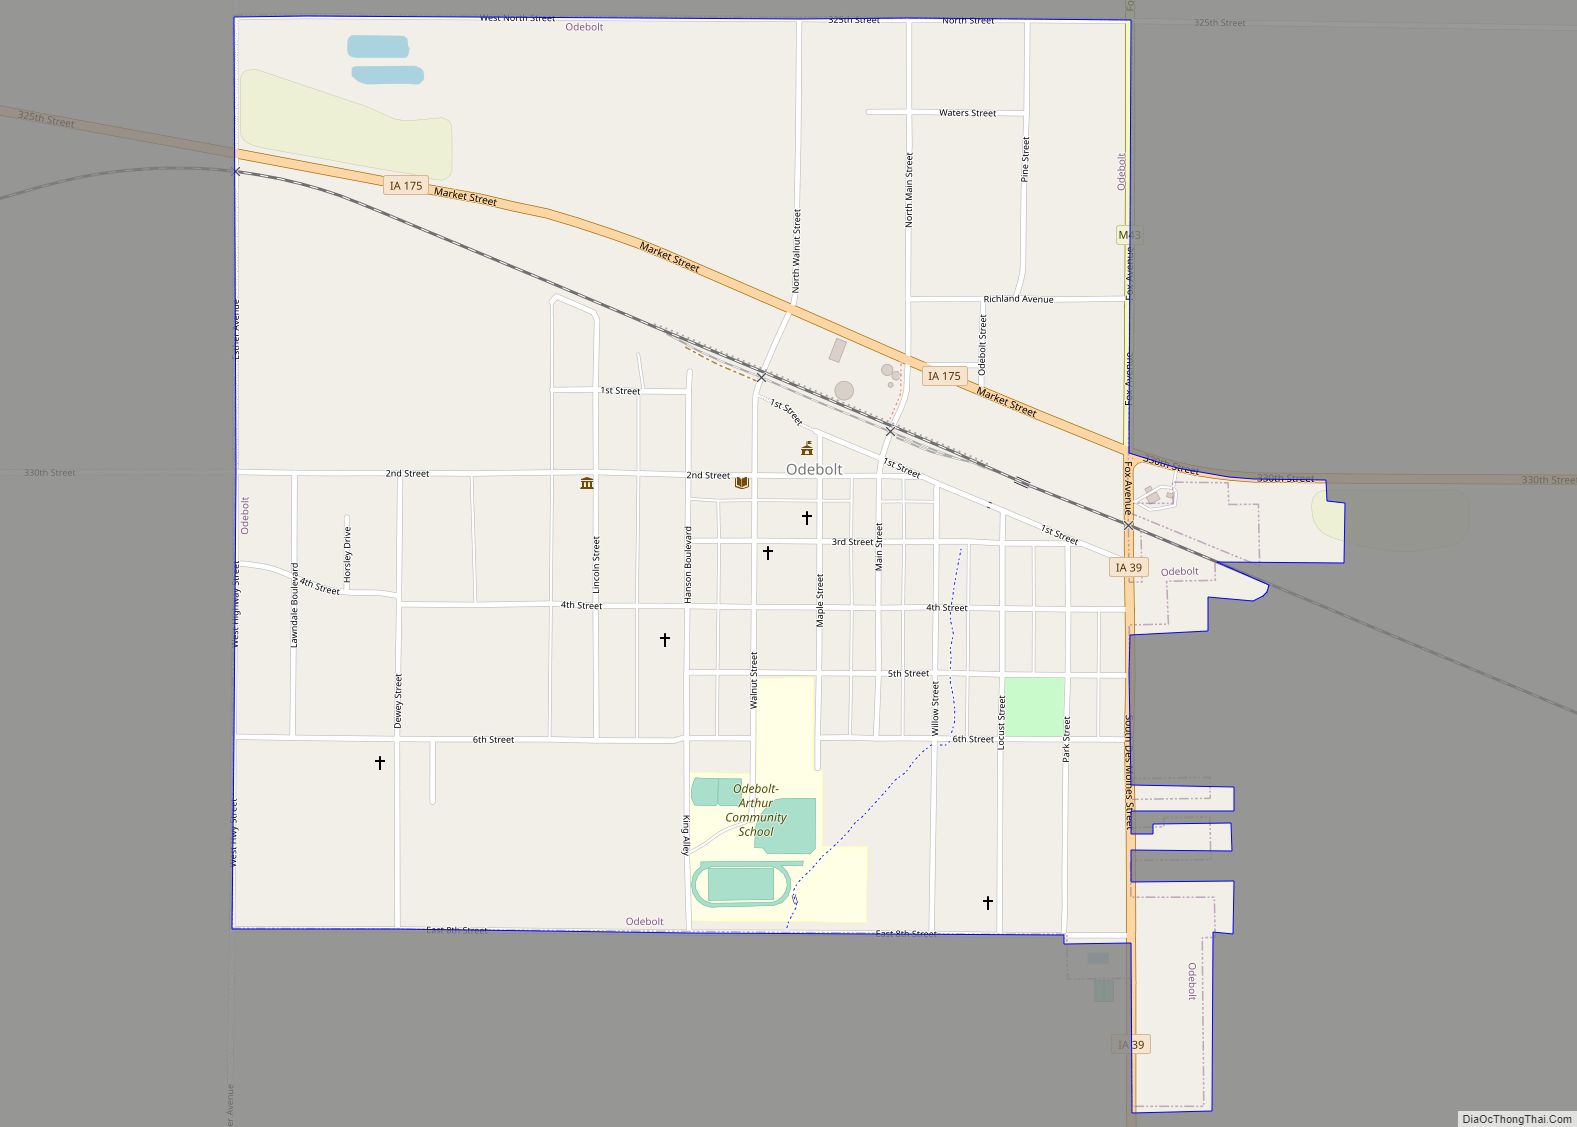 Map of Odebolt city